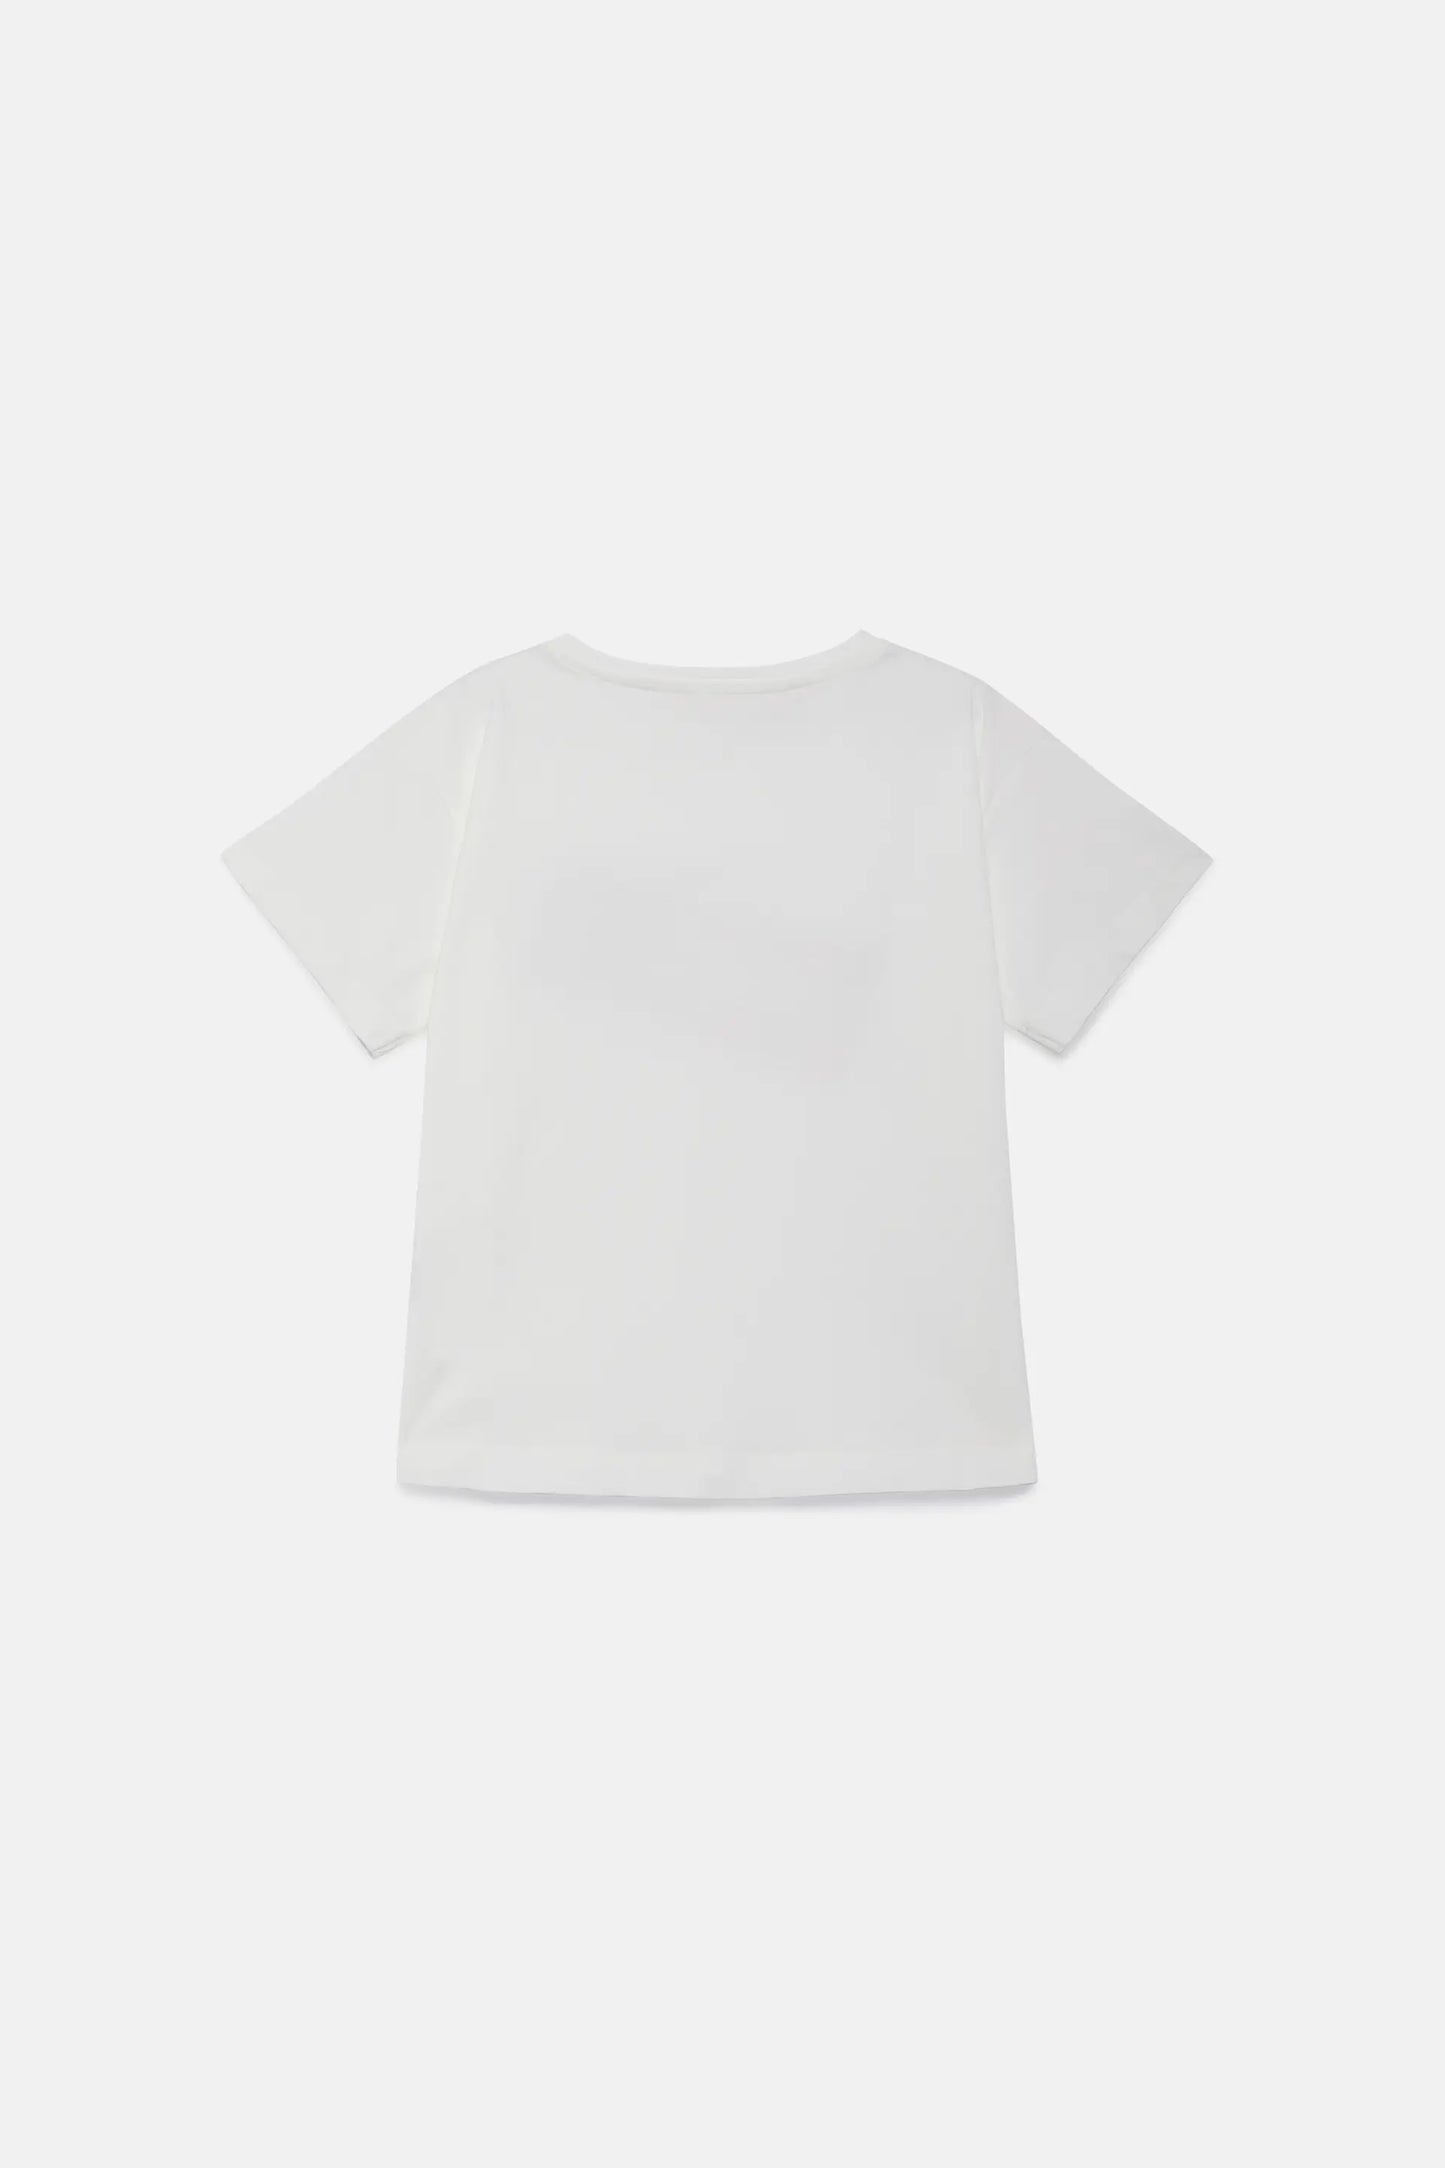 Camiseta unisex Chocolate blanca